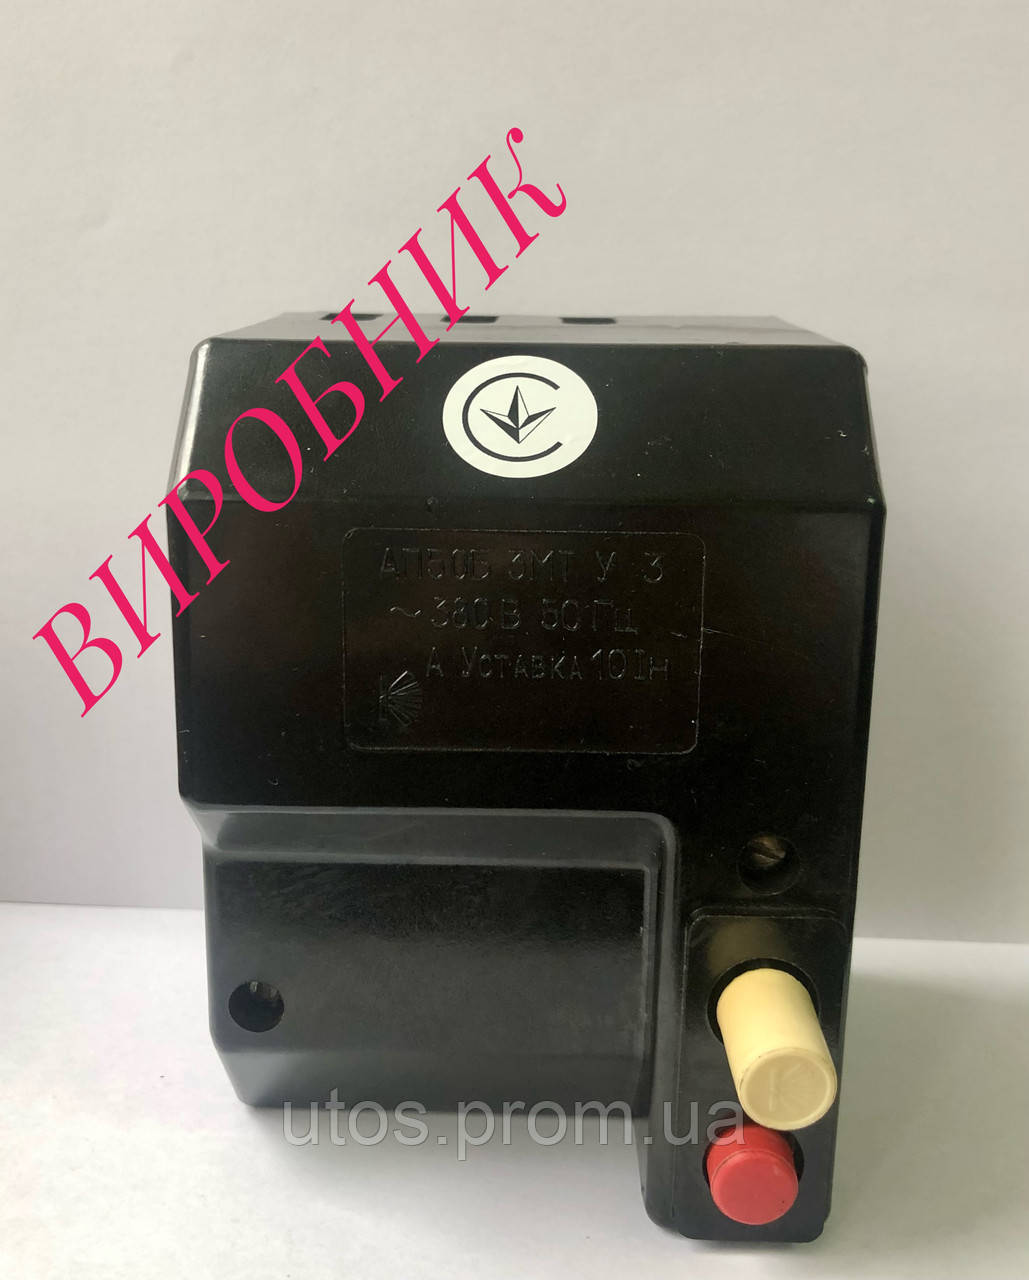 Автоматичний вимикач АП50Б 3 М - 1,6А, 2,5А, 4А (ПОГ "Коростенське УВП УТОС")